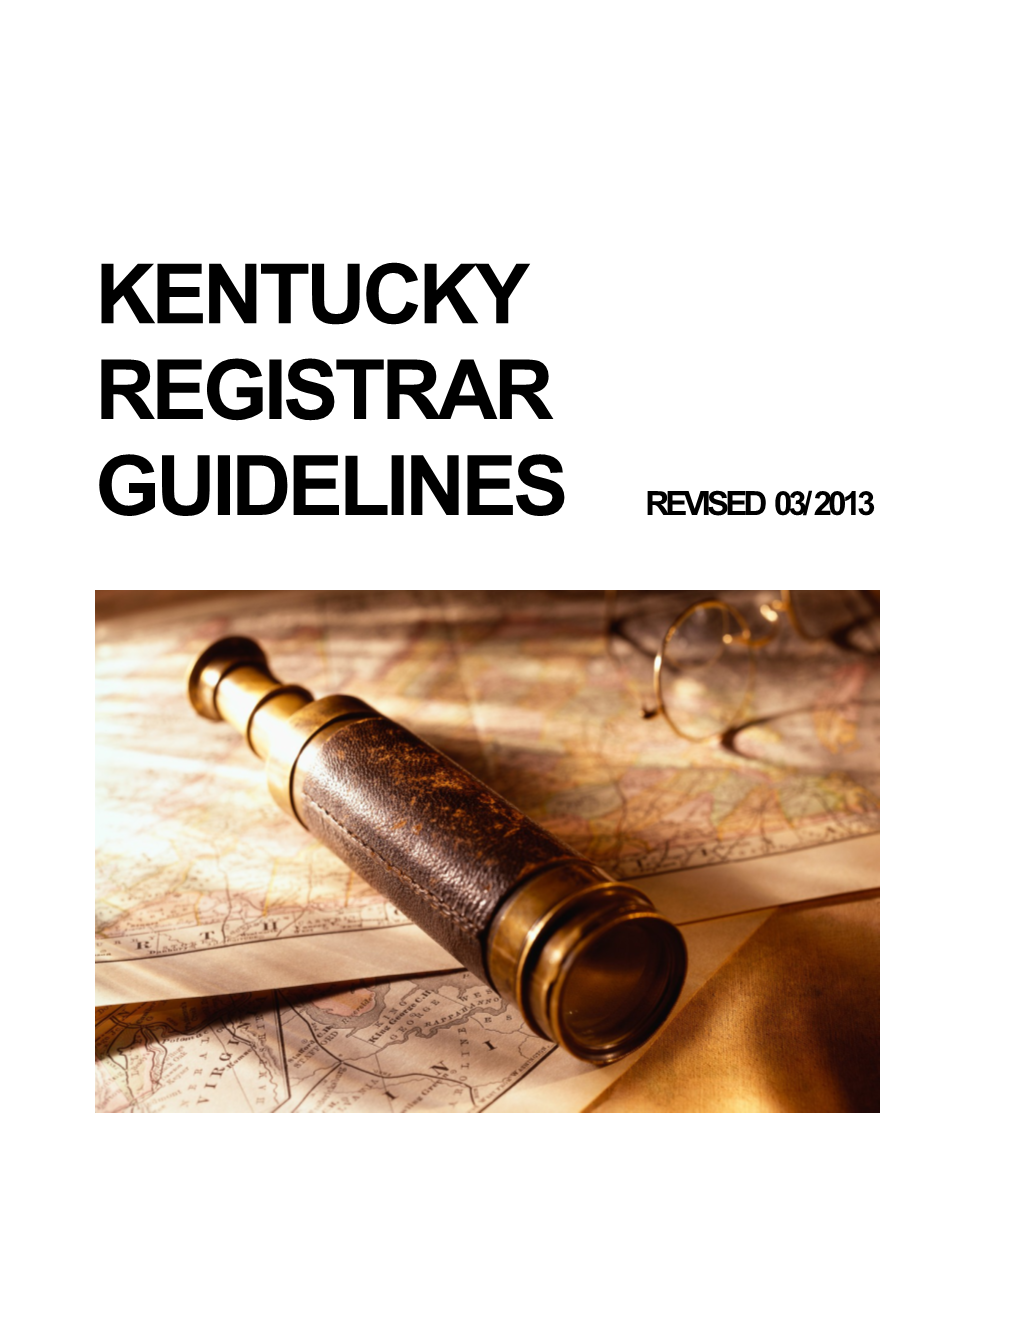 Kentucky Registrar Guidelines Revised 03/2013